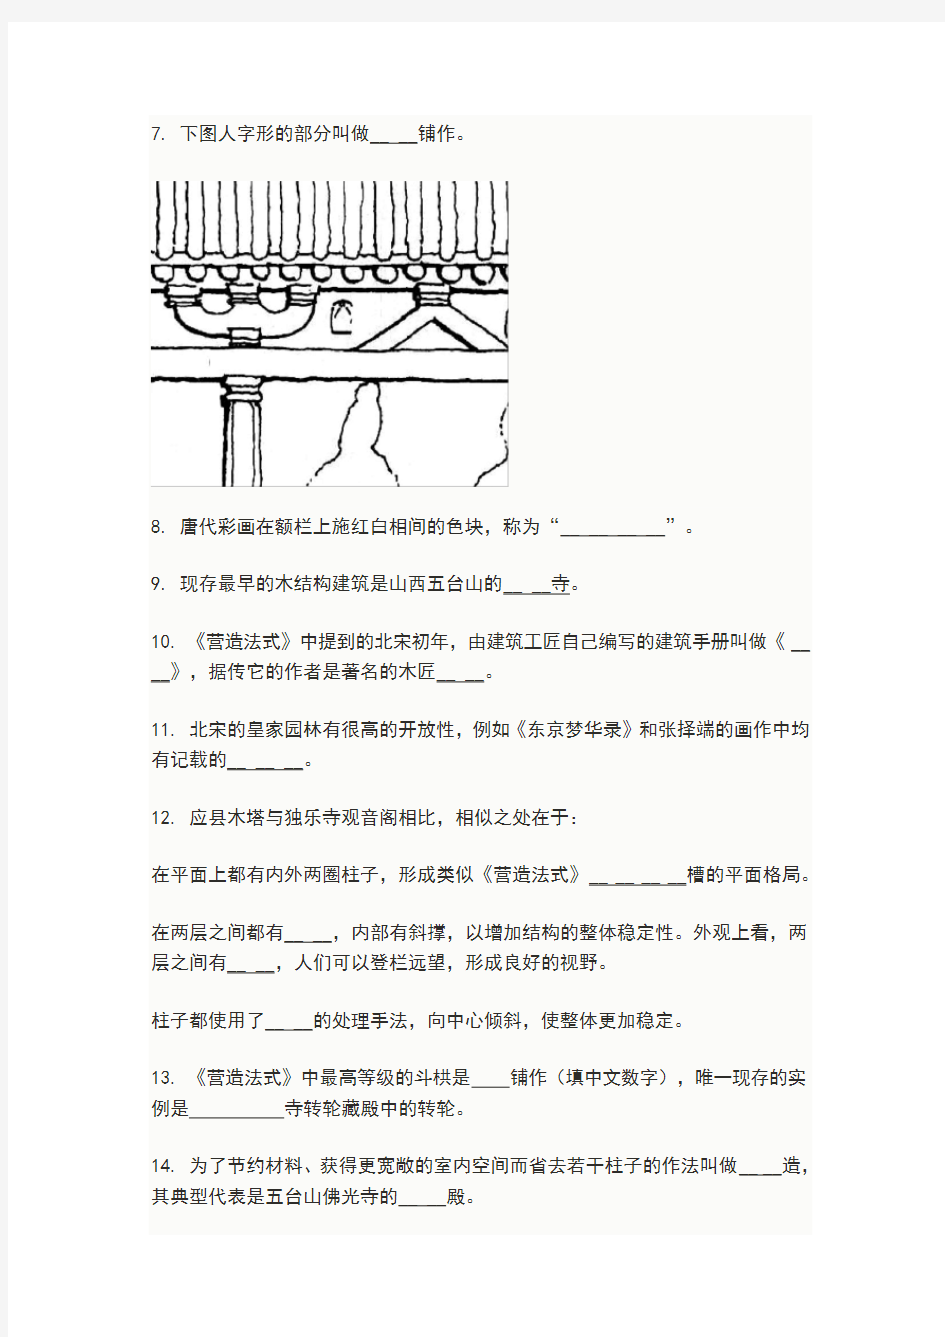 中国建筑史 期末作业题目(及答案)剖析